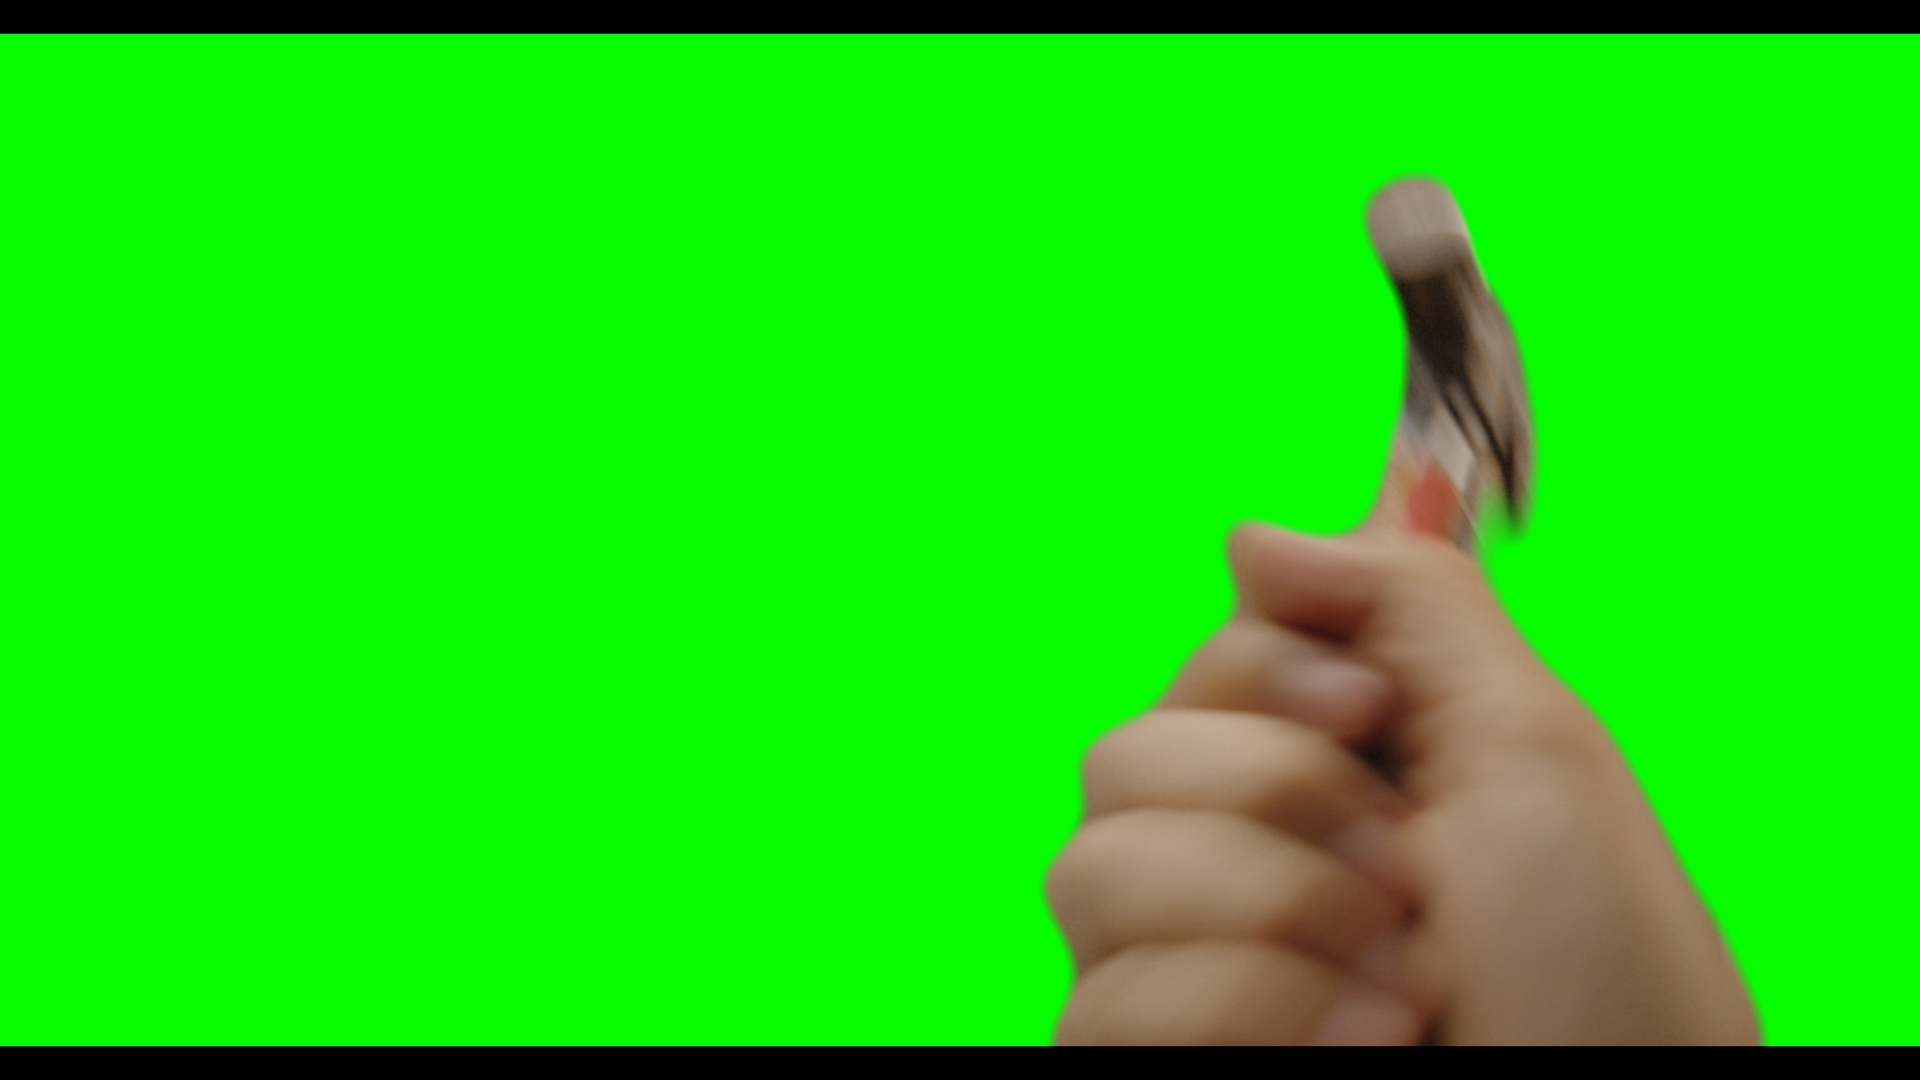 トンカチ ハンマーで画面を叩く 壊す 破壊 グリーンバック Aim 無料動画素材 Free Video Material Distribution